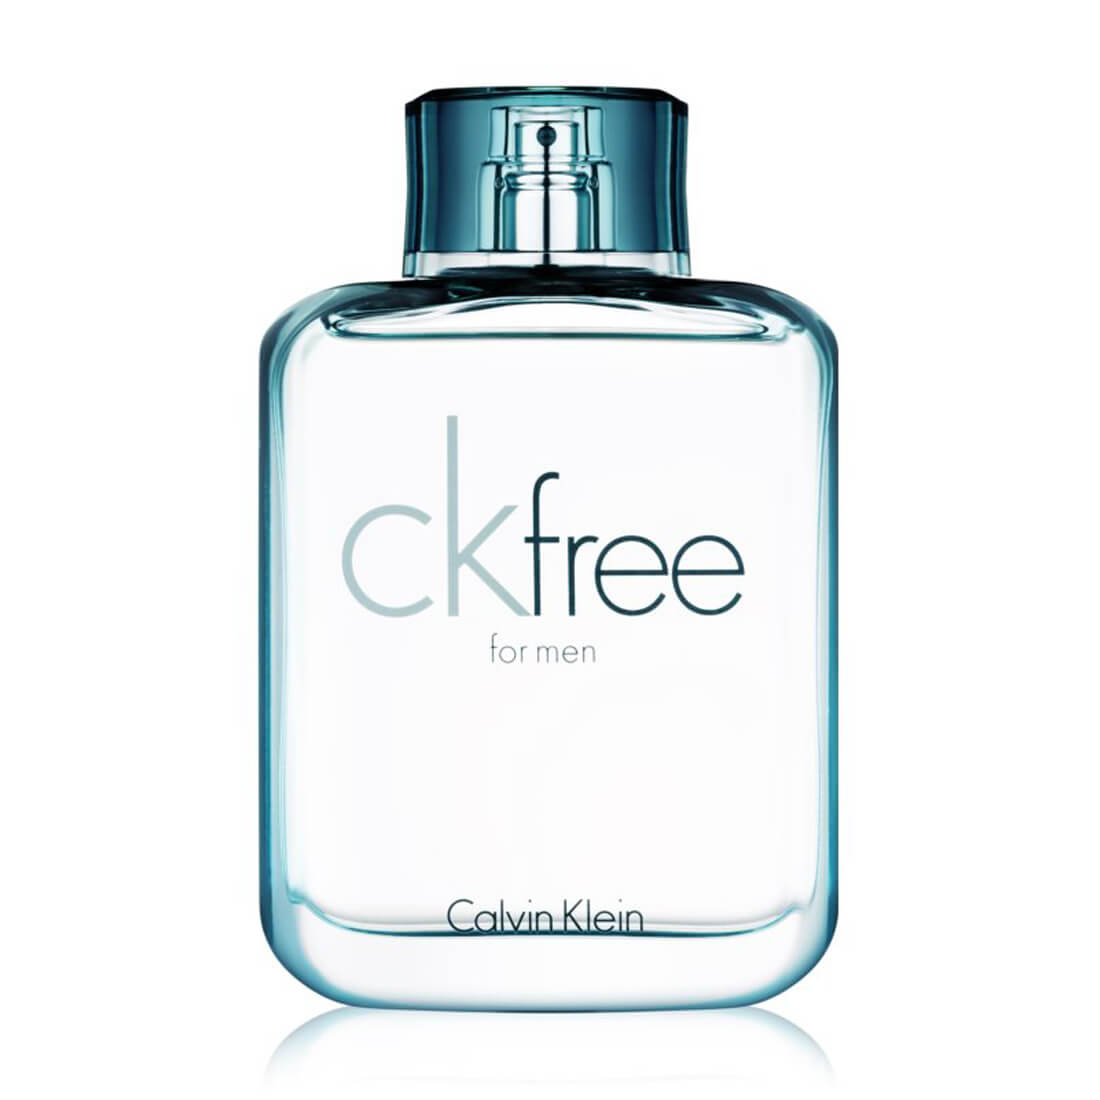 Calvin Klein CK Free Eau De Toilette For Men 